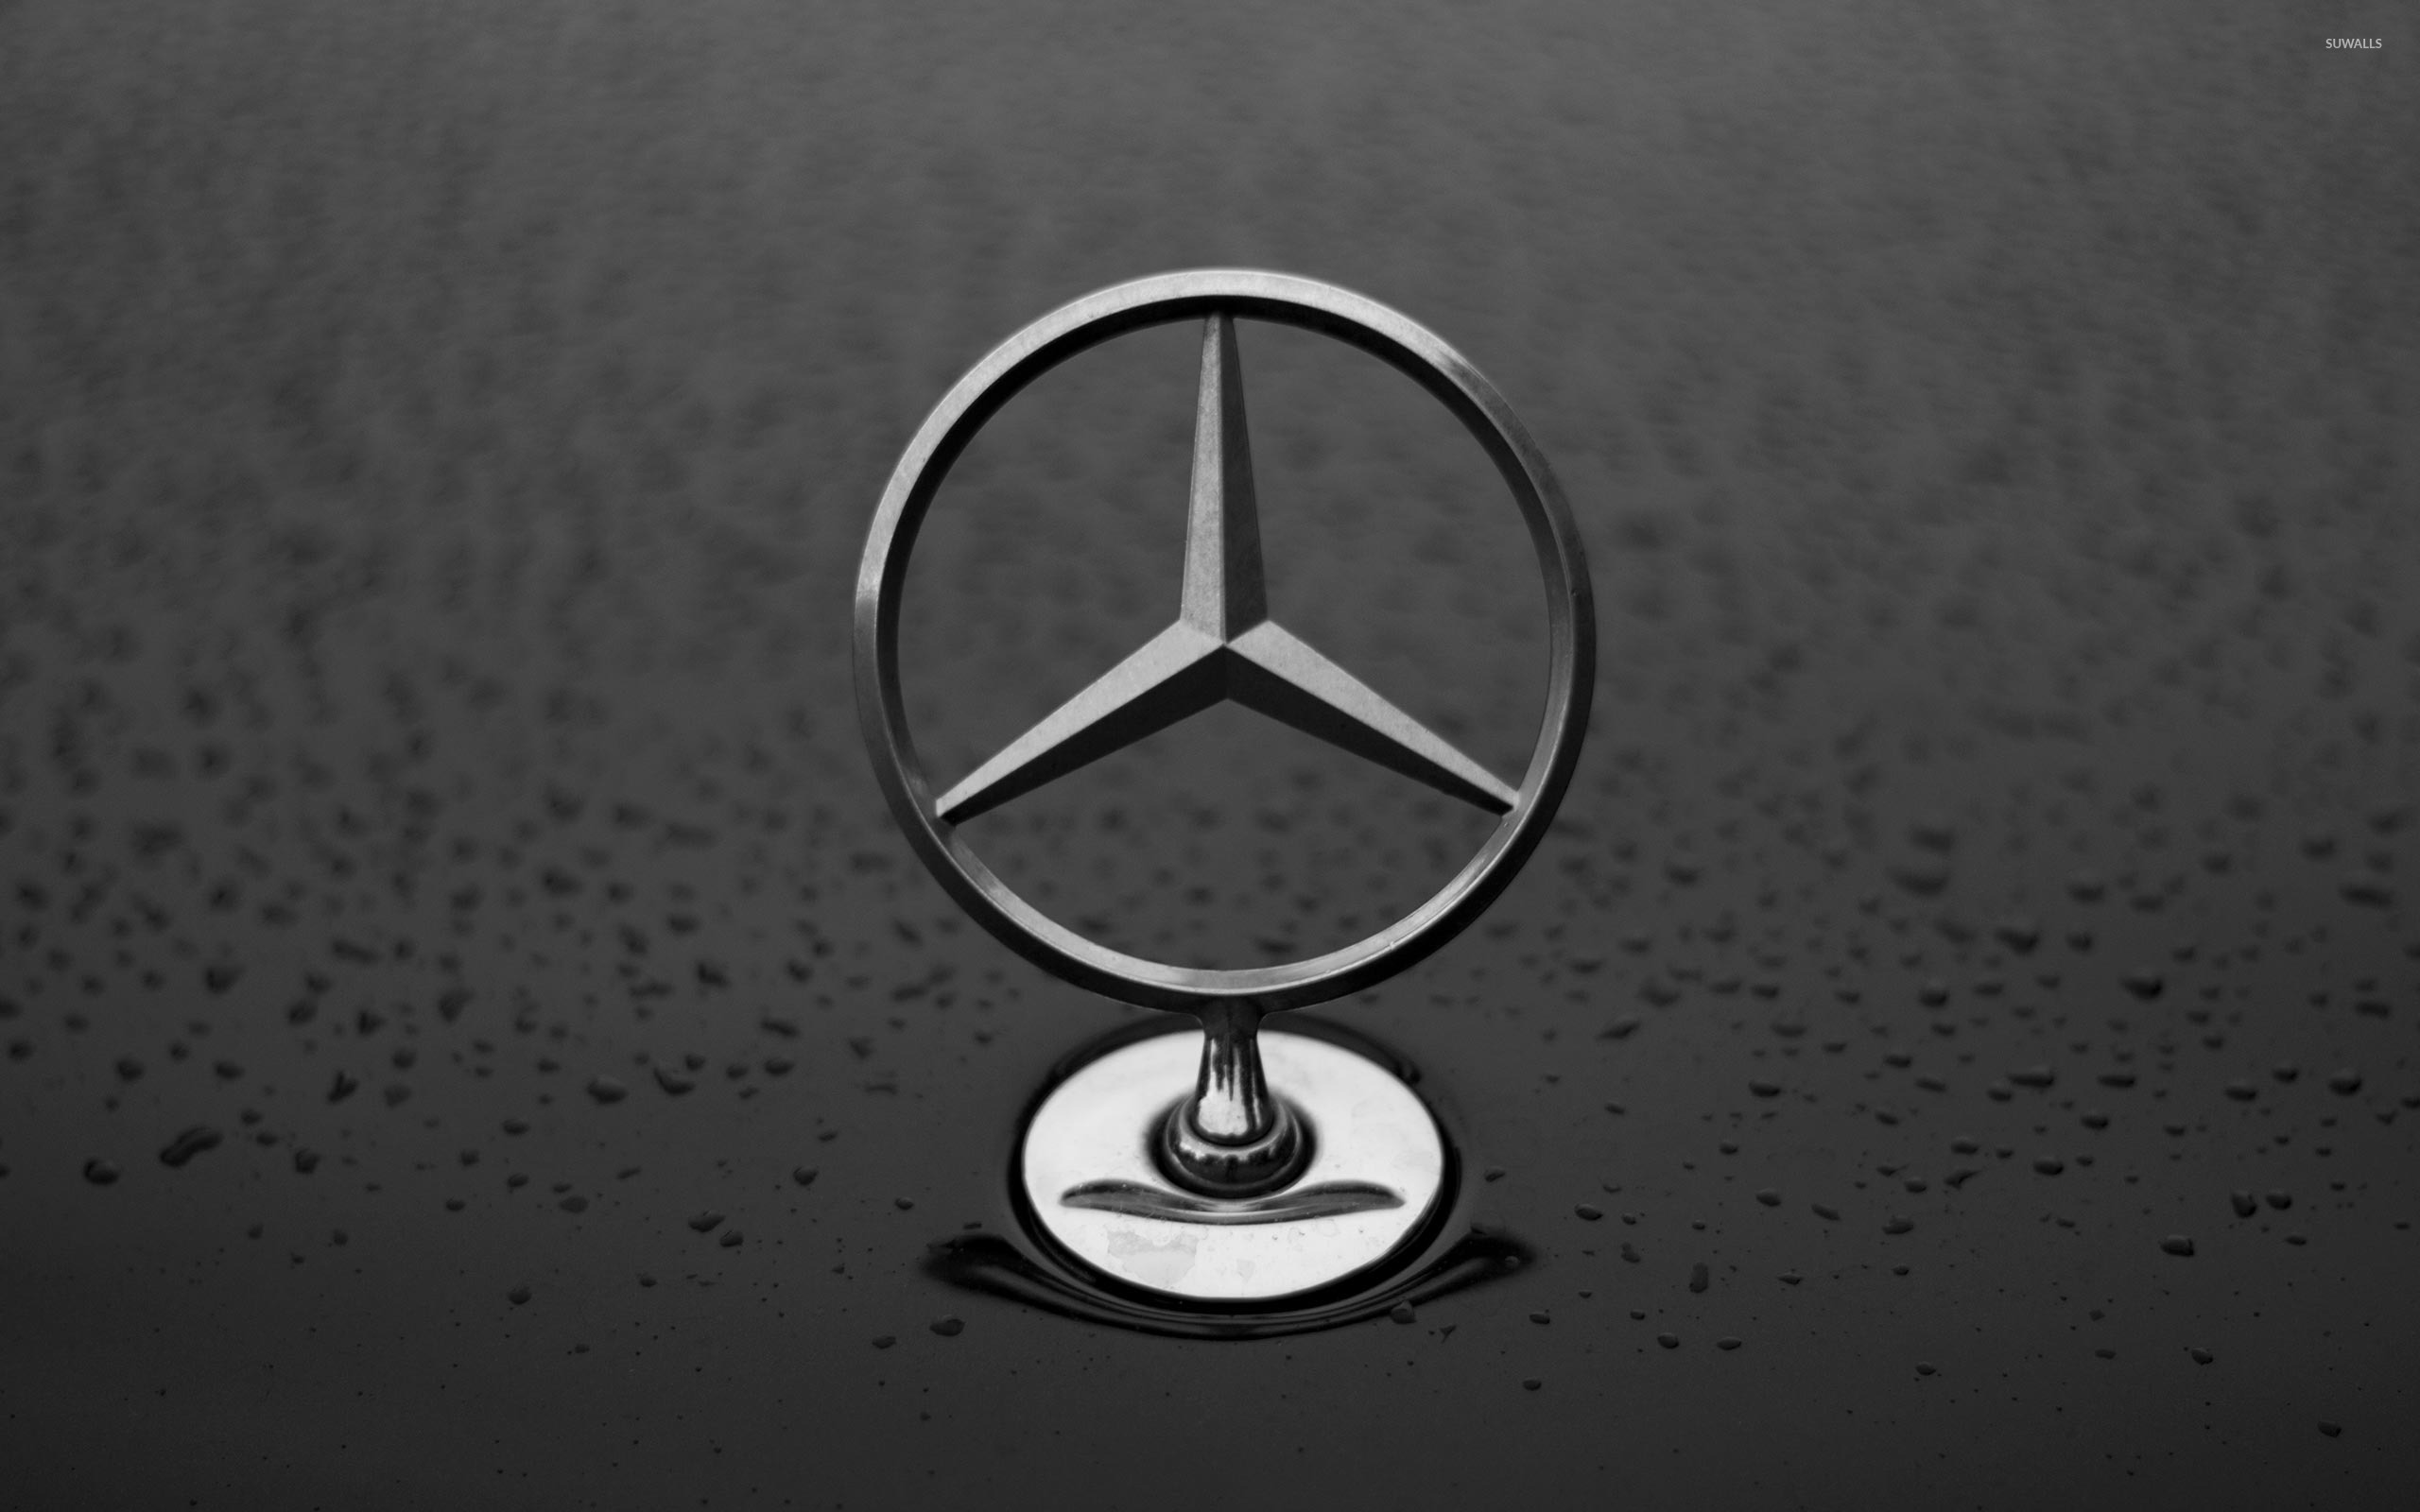 Mercedes Benz Hood Ornament Wallpaper Car Wallpapers 50902 Images, Photos, Reviews